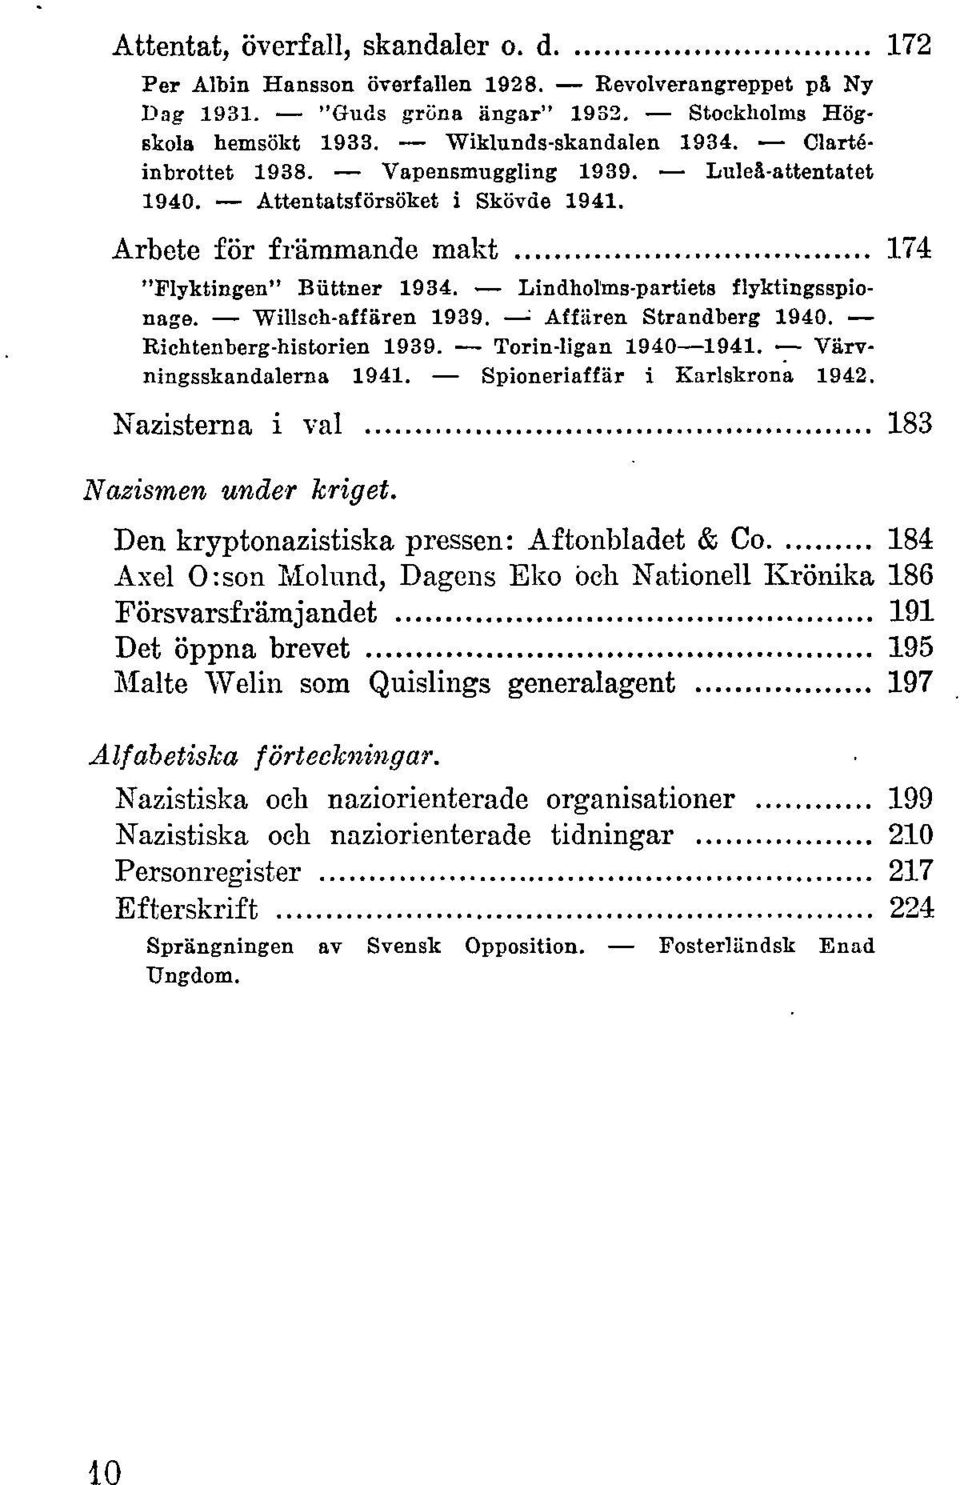 Willsch-affären 1939. ' Affären Strandberg 1940. Richtenberg-historien 1939. Torin-ligan 1940 1941. Värvningsskandalerna 1941. Spioneriaffär i Karlskrona 1942.